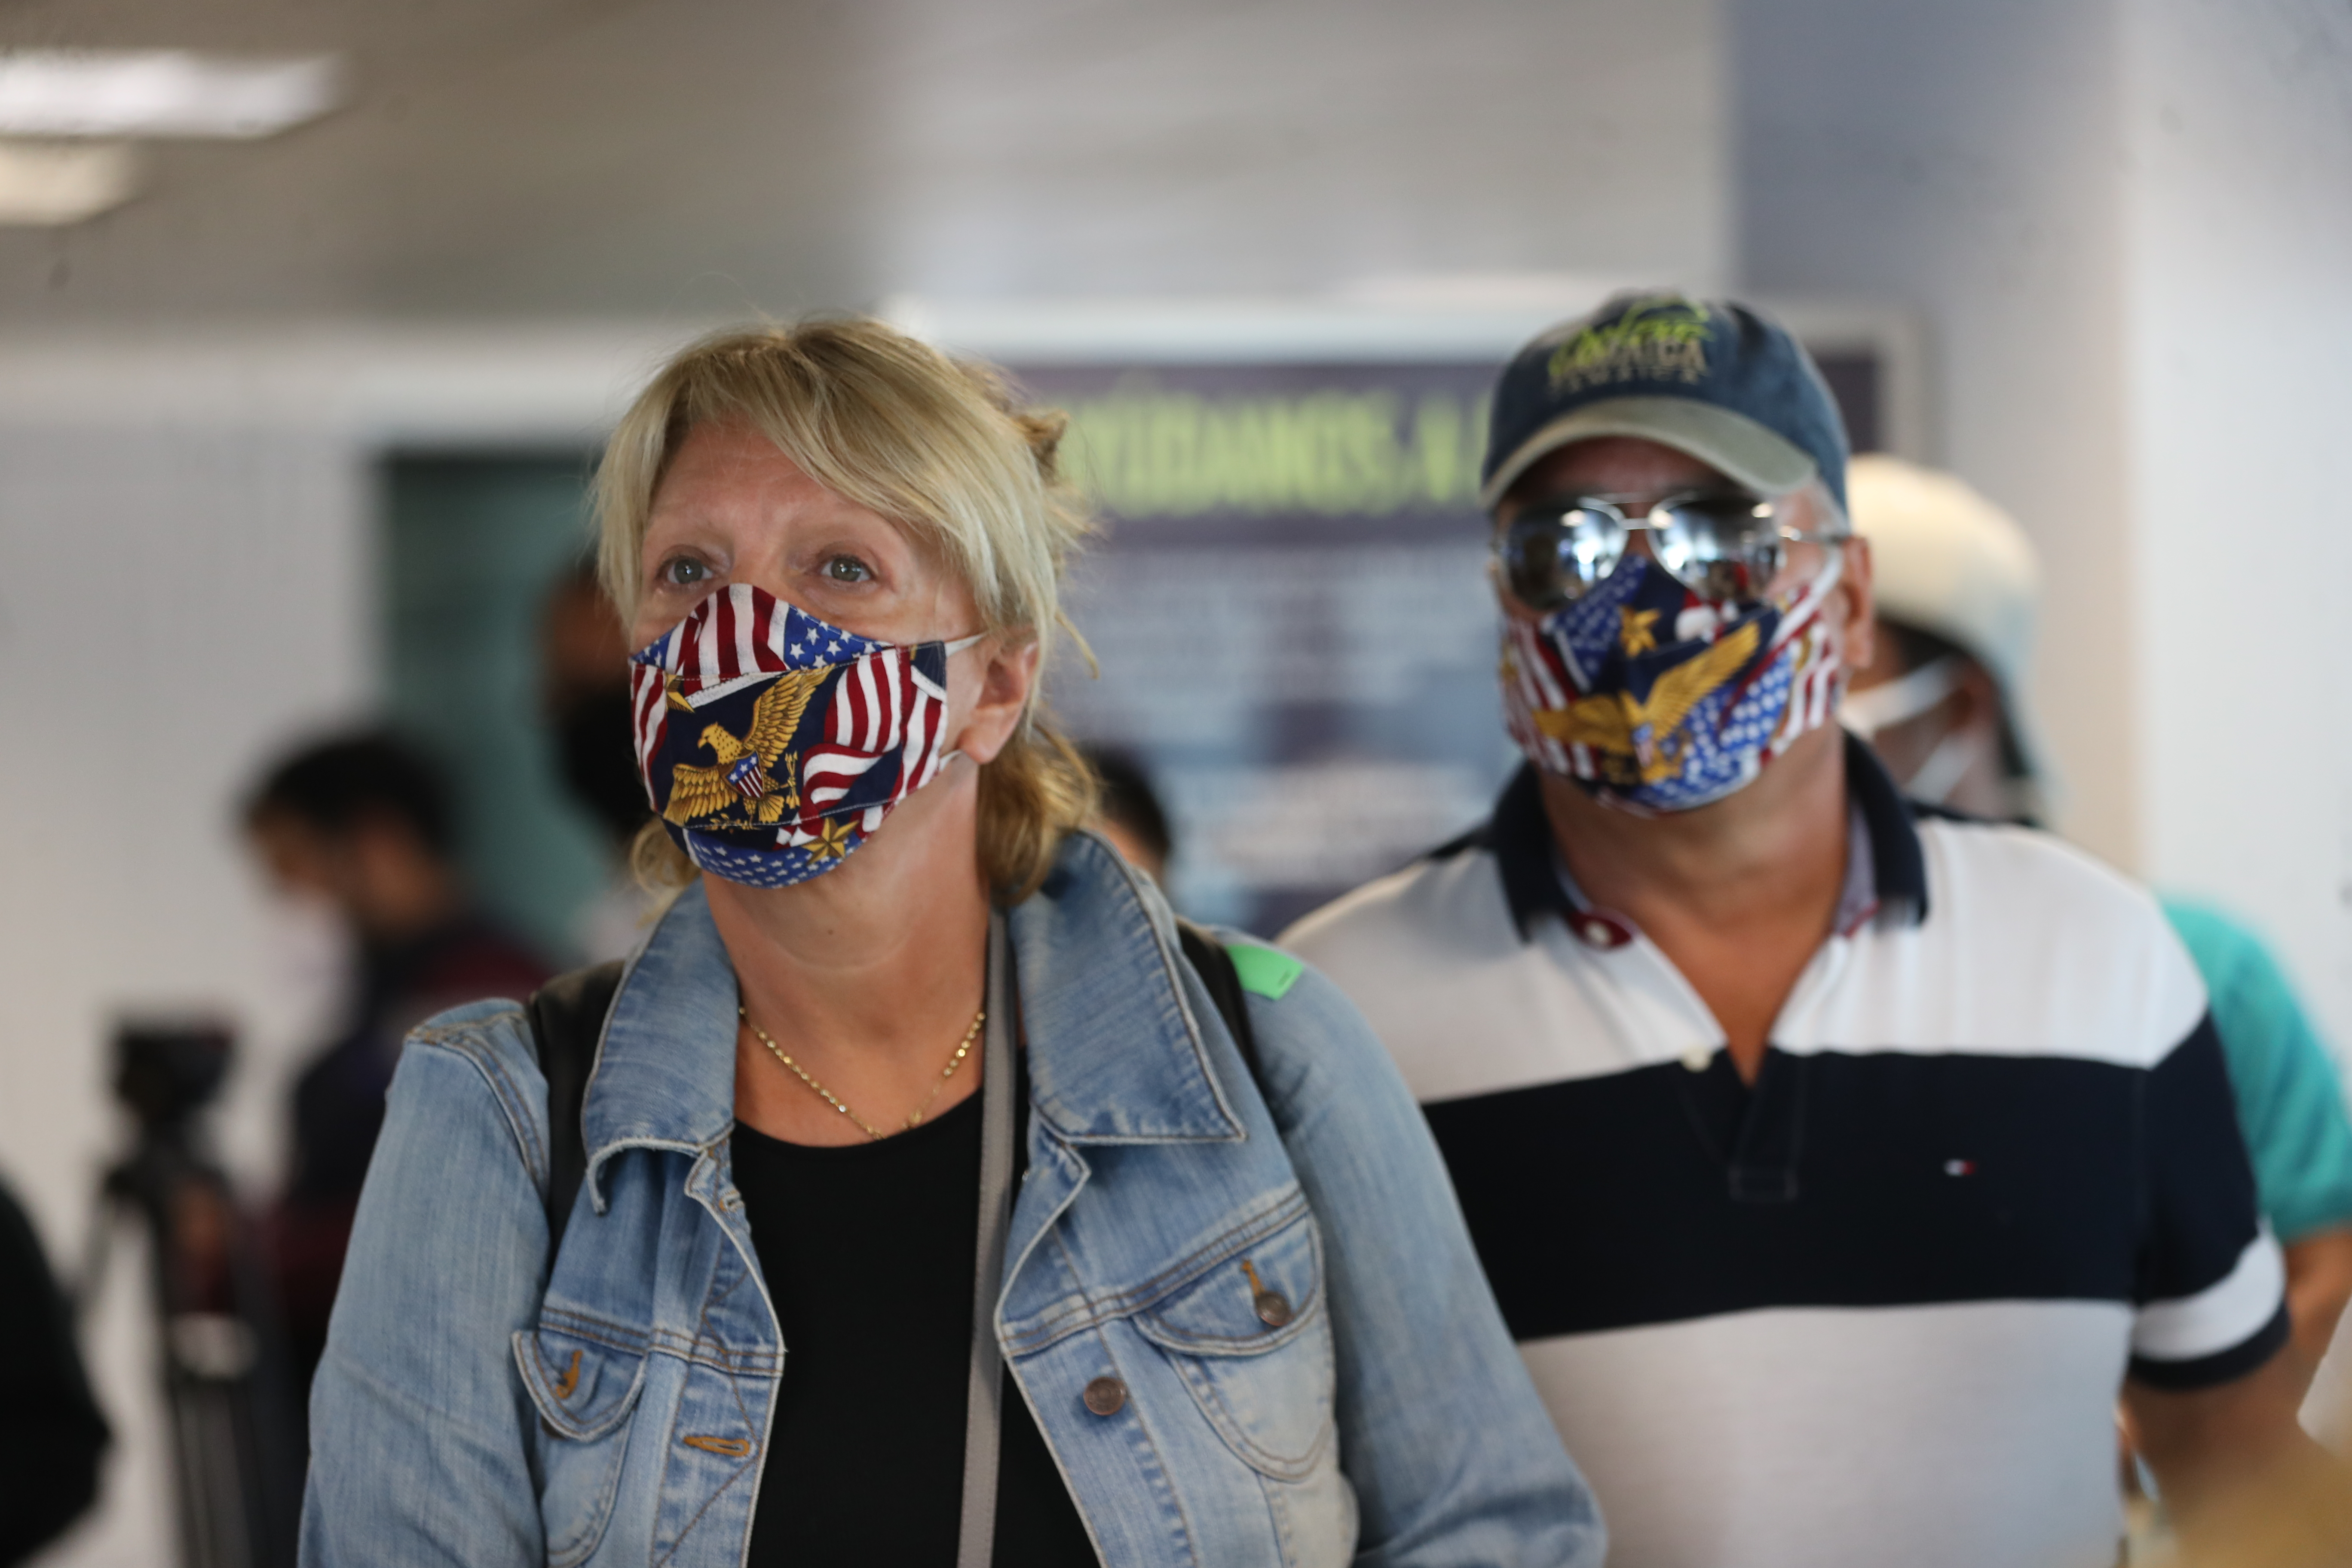 Una pareja utiliza mascarillas para protegerse del coronavirus mientras esperan para abordar un avión en un aeropuerto. (Foto Prensa Libre: Erick Avila)